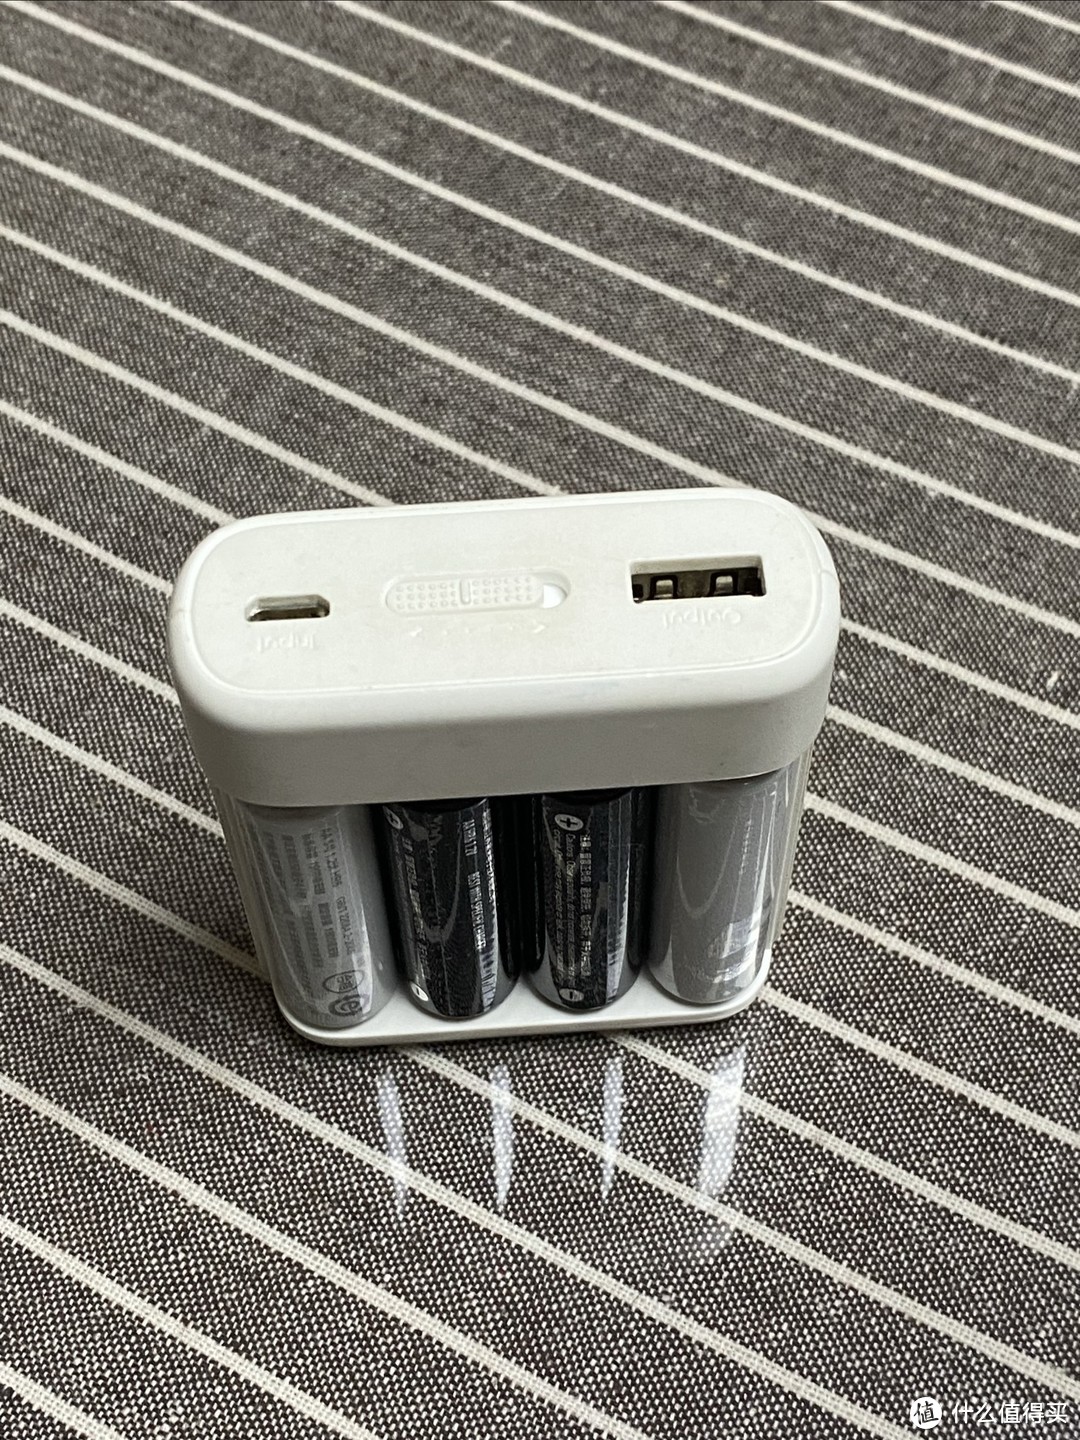 能当做手机充电宝使用的小米充电电池。